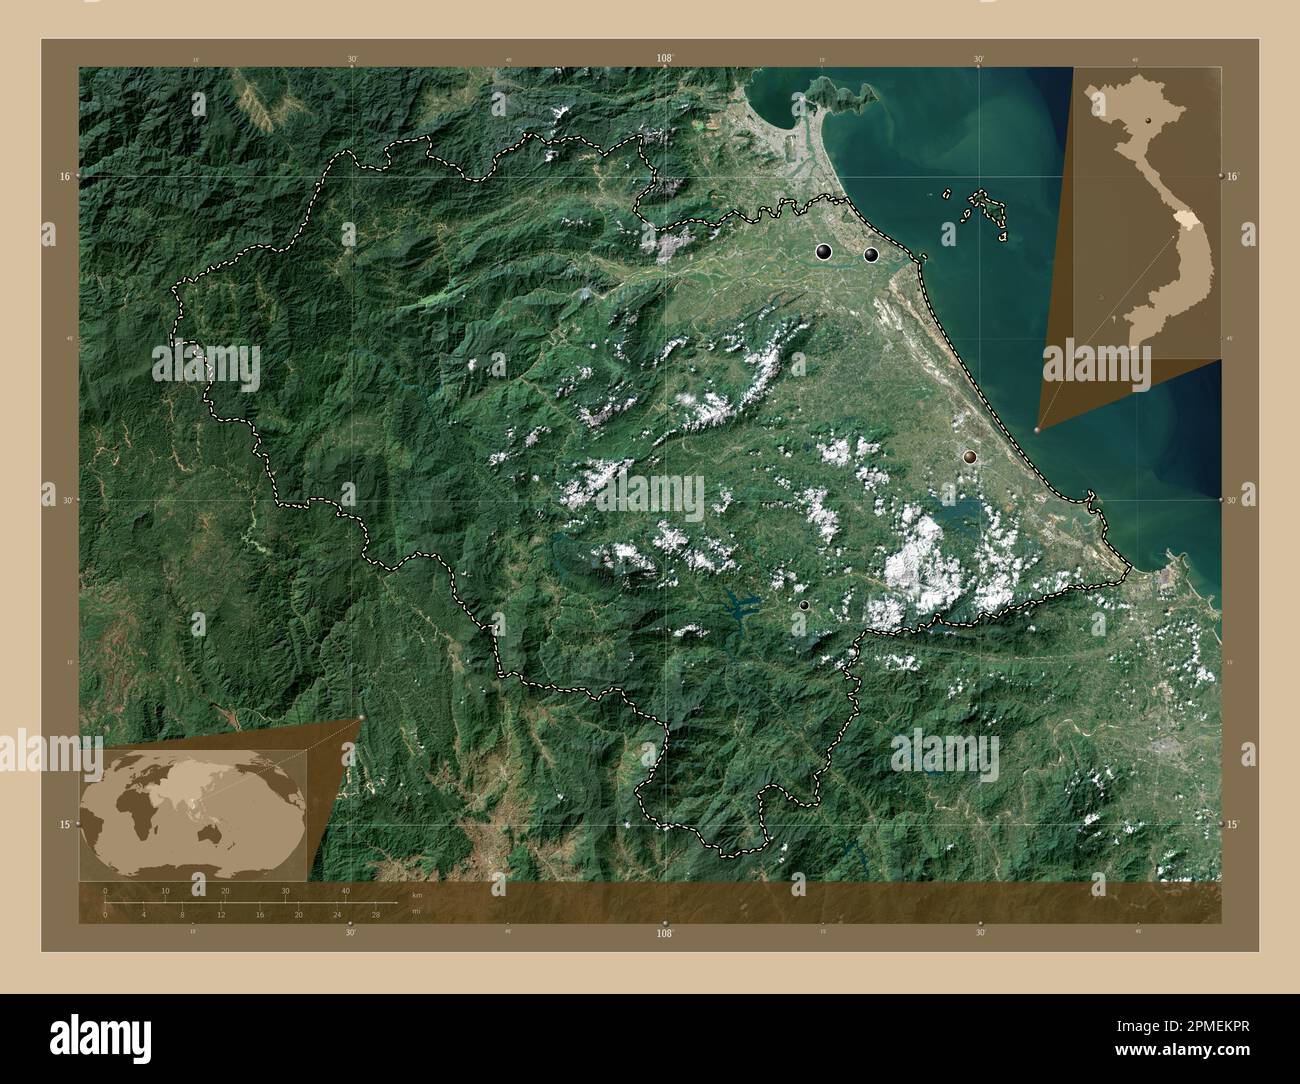 Quang Nam, Provinz Vietnam. Satellitenkarte mit niedriger Auflösung. Standorte der wichtigsten Städte der Region. Eckkarten für zusätzliche Standorte Stockfoto